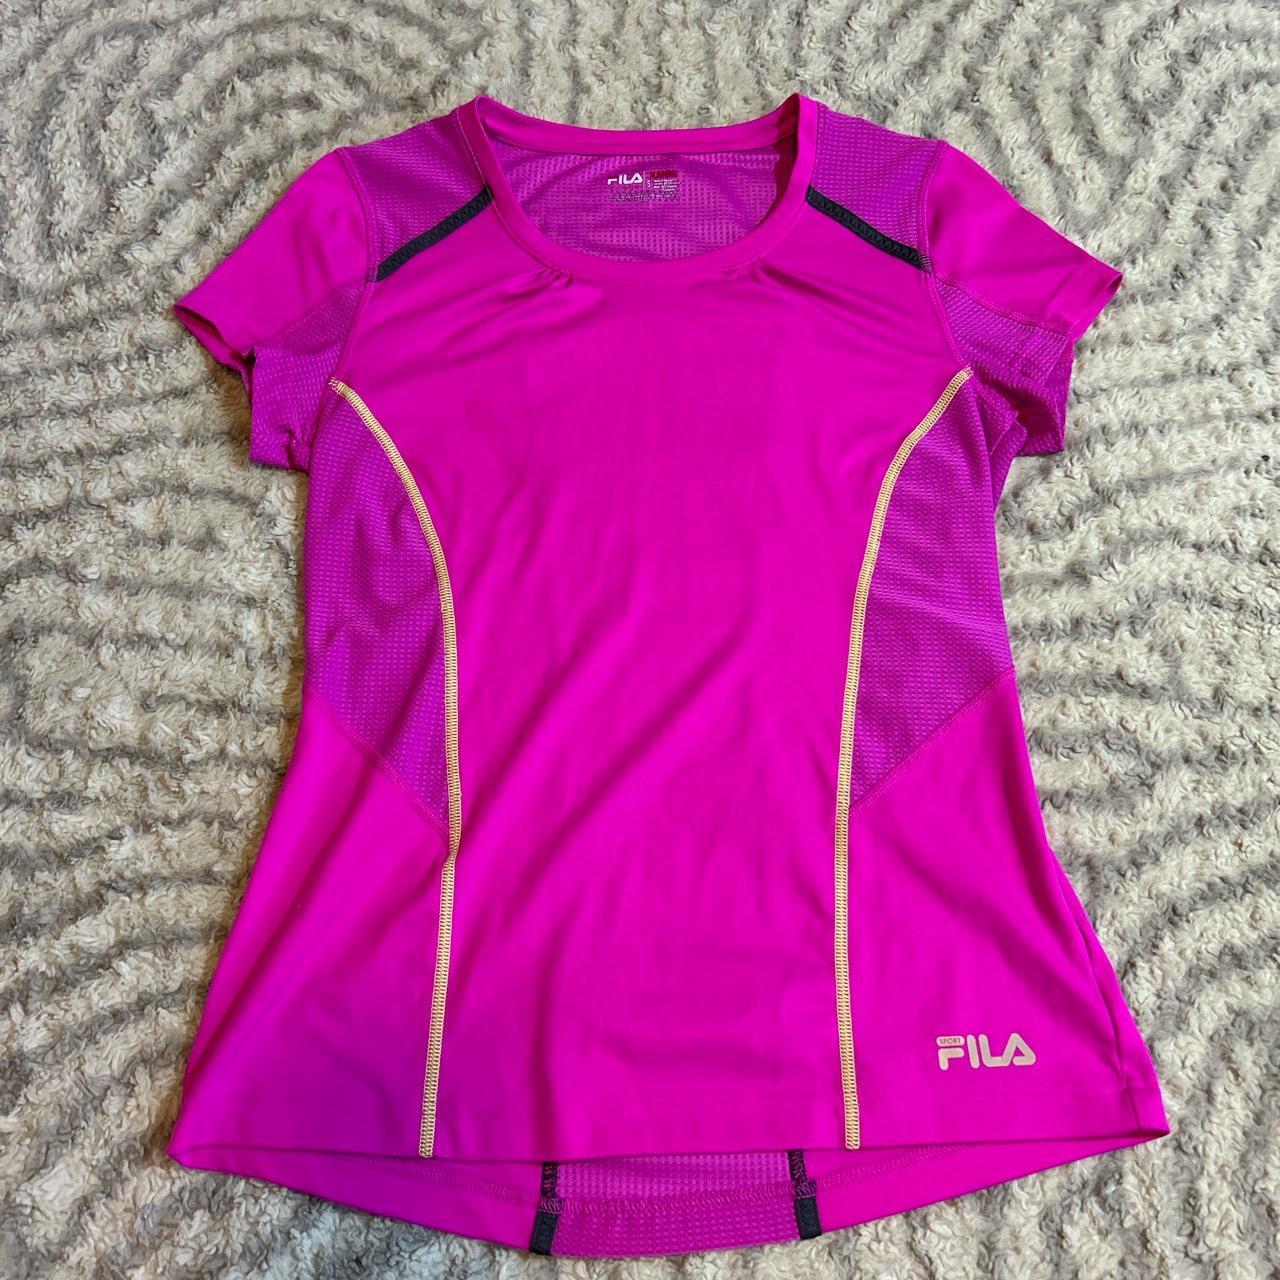 pink fila workout shirt size S worn a bit but still... - Depop